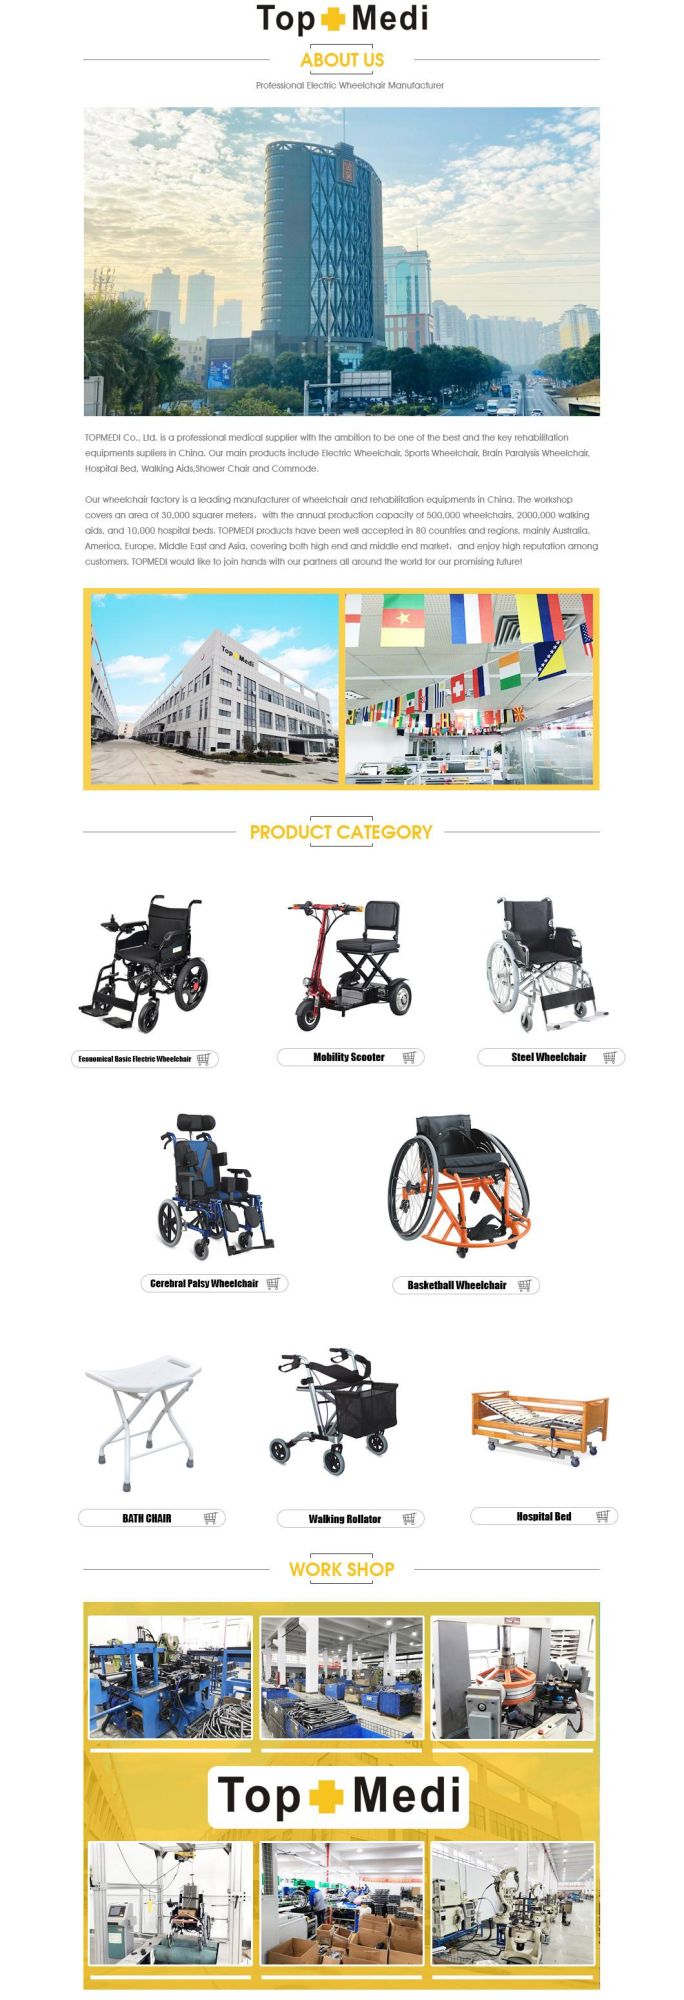 Topmedi Reclining Manual Wheelchair Trw204bj Wheel Chair Parts